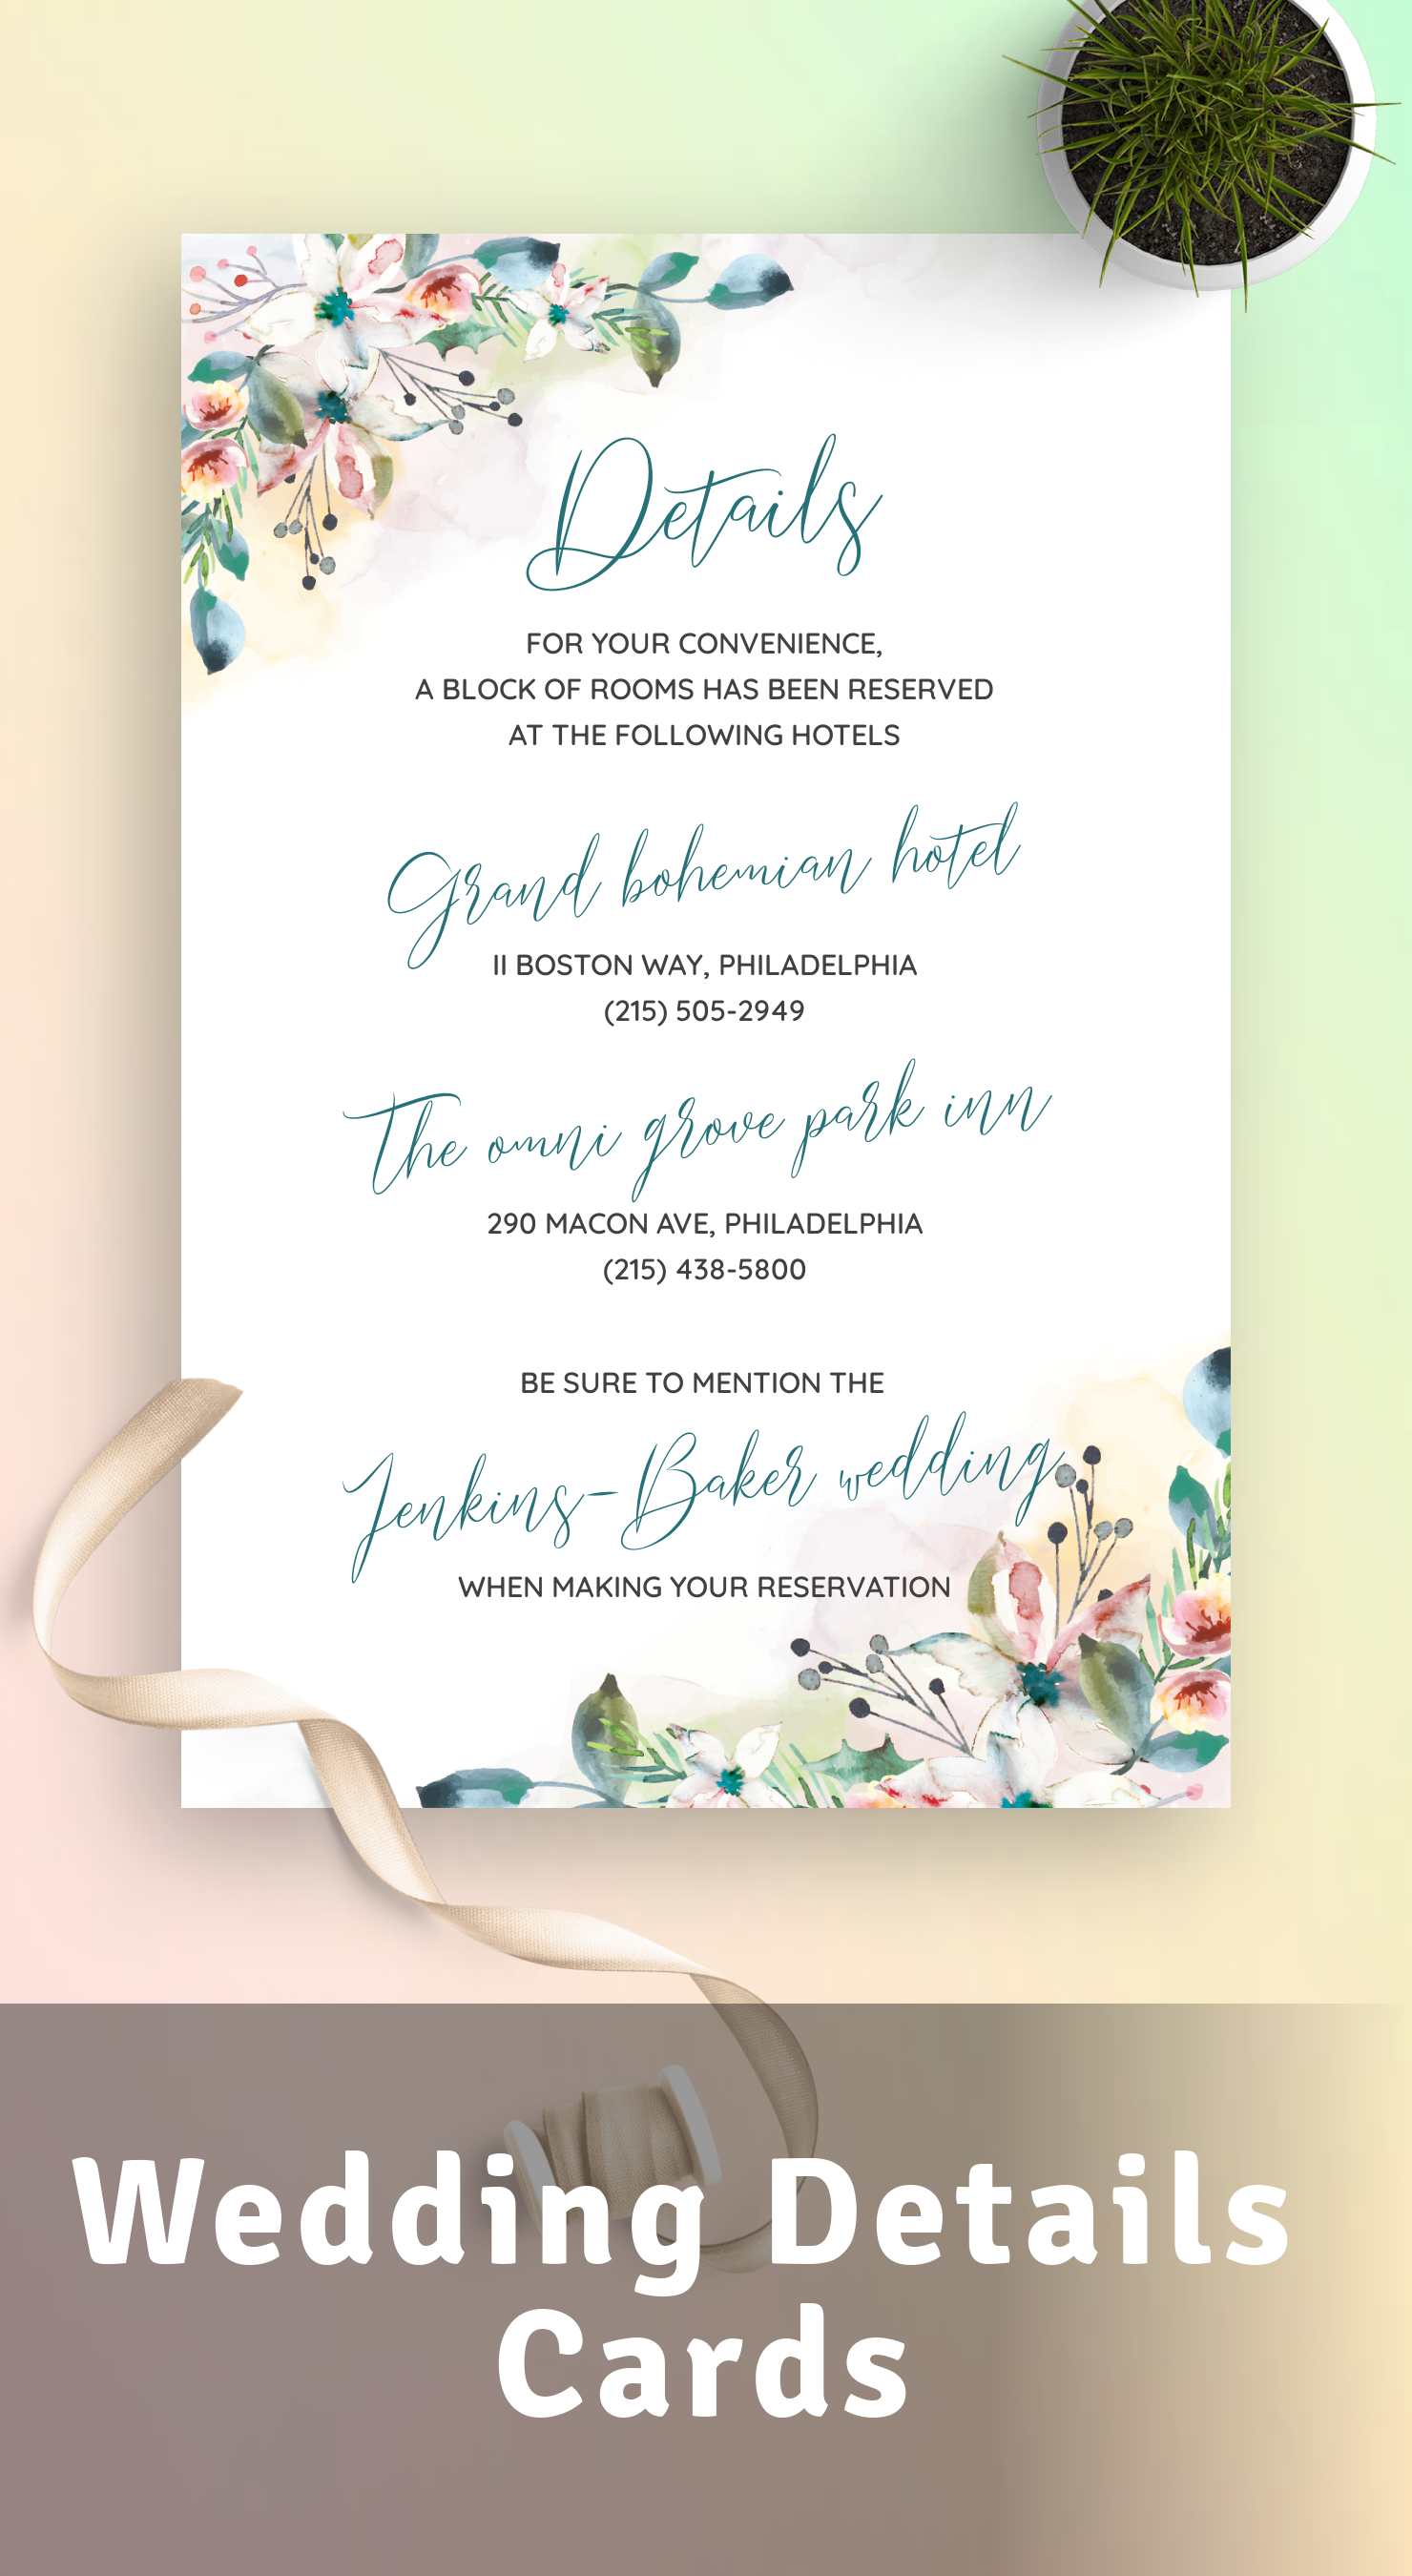 Get Wedding Details Cards